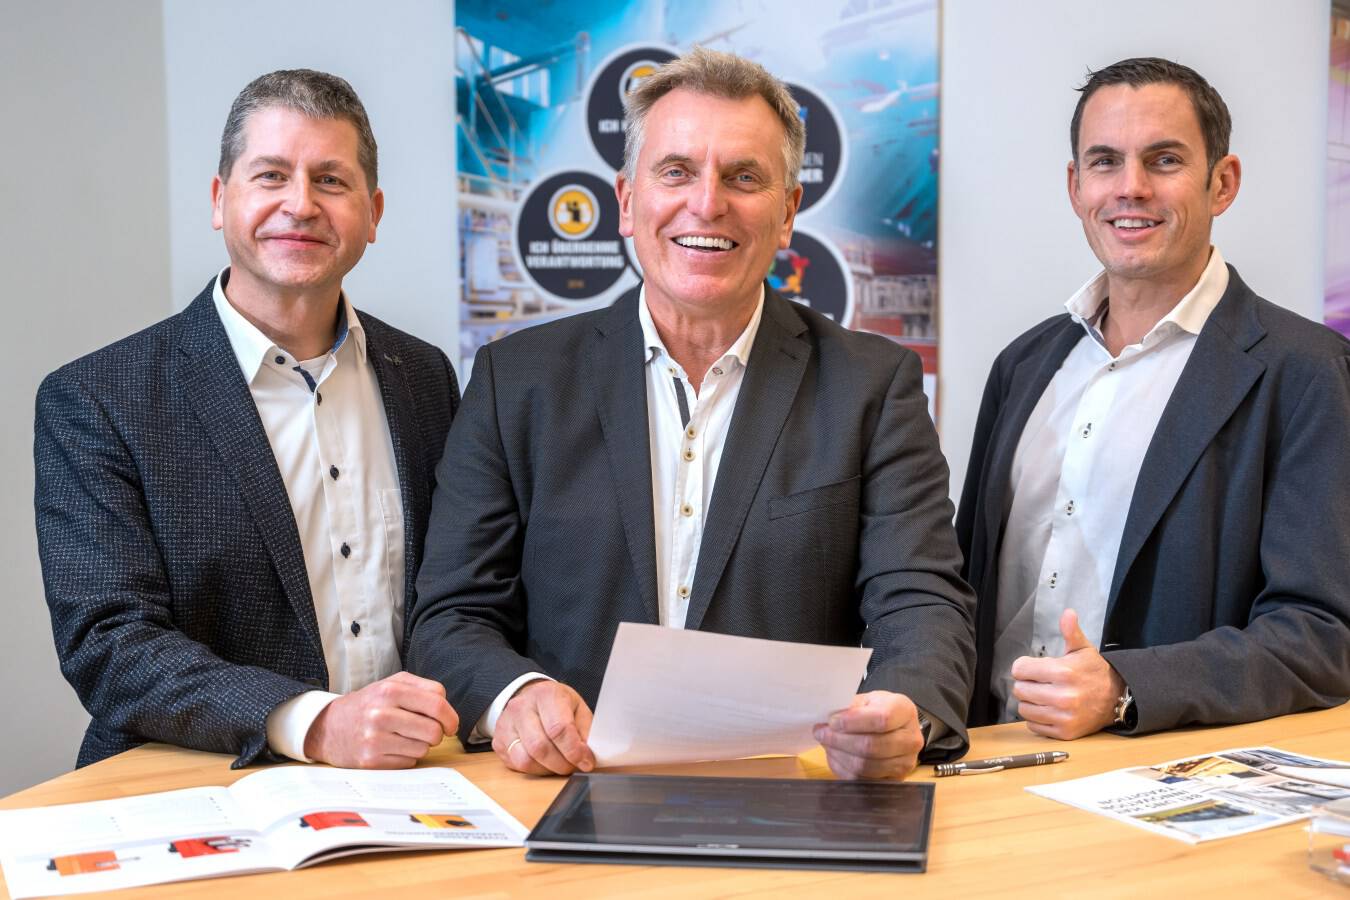 Das neue Geschäftsführungs-Team bereits in Aktion (von links: Mario Haas, Dipl.-Kfm. Uwe Kahmann und Dipl.-Ing. Alexander Kuppe)